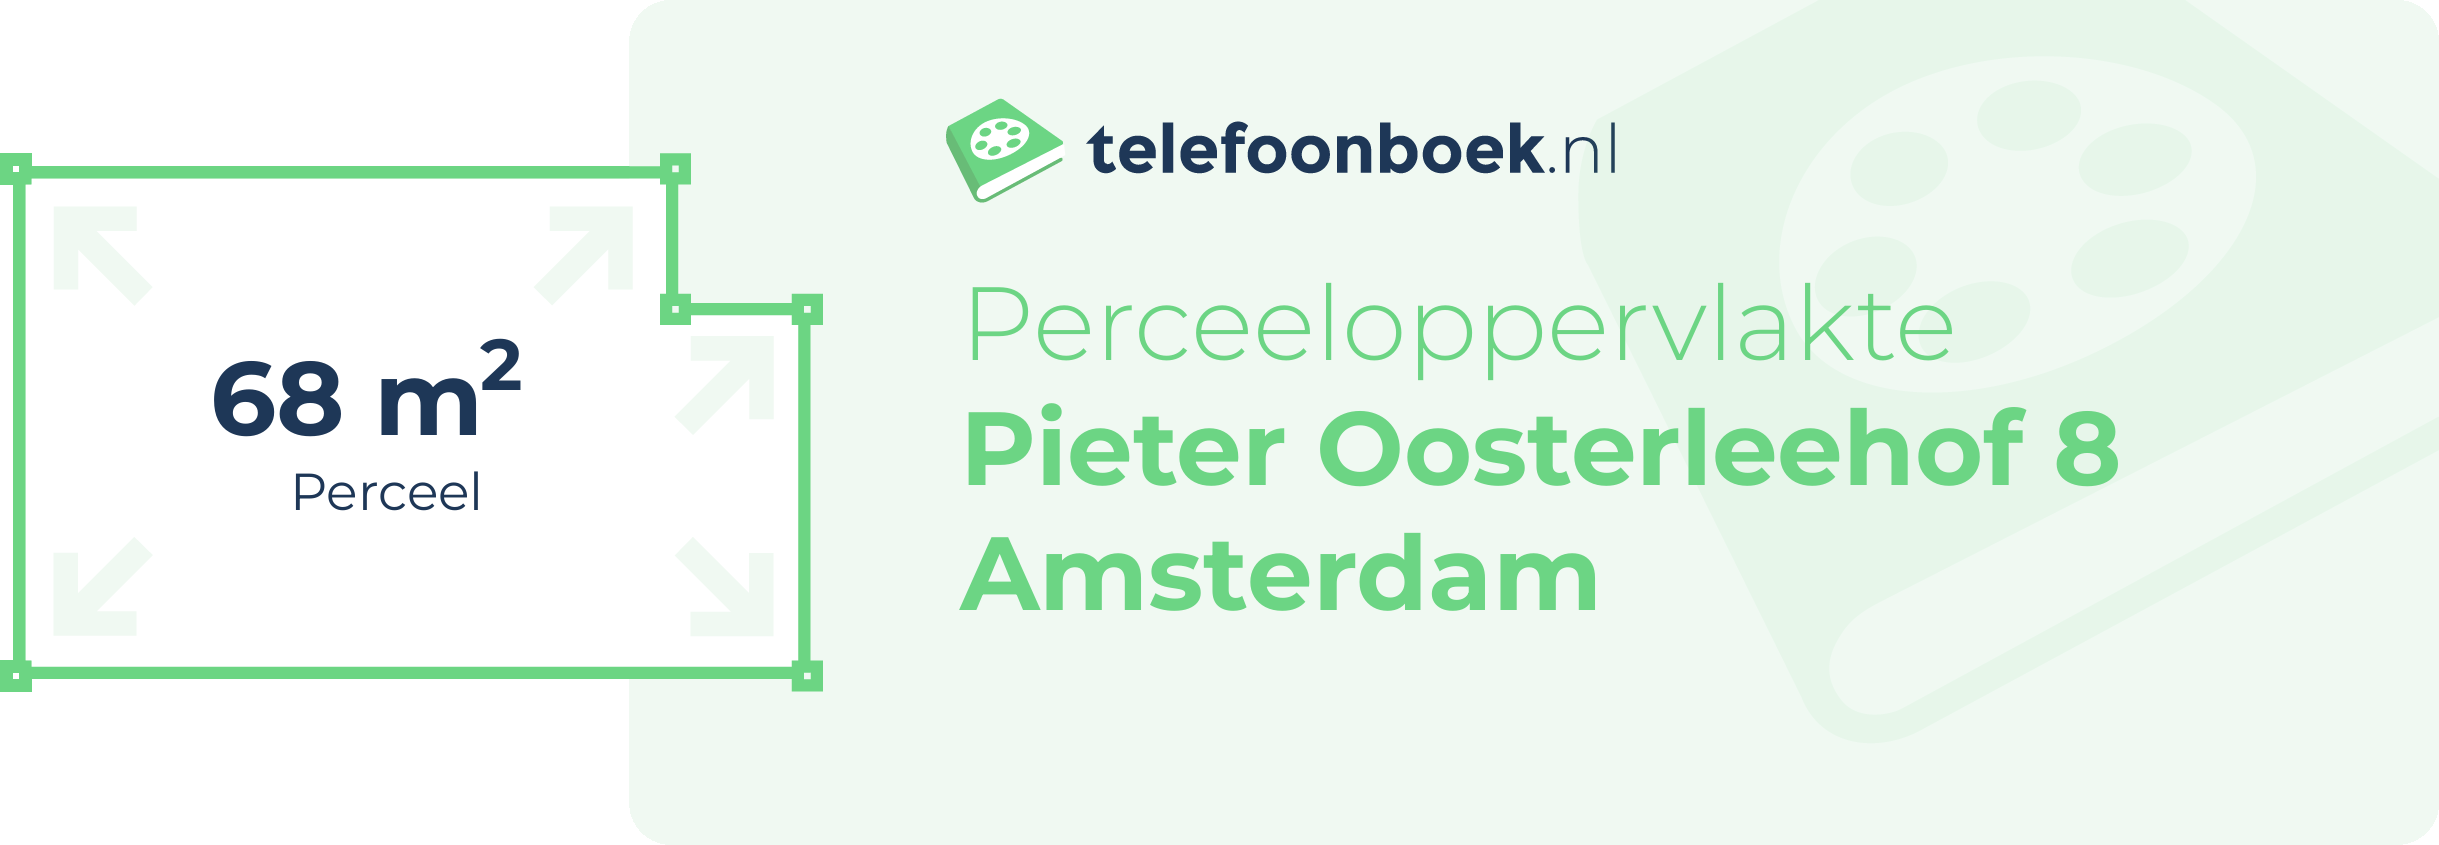 Perceeloppervlakte Pieter Oosterleehof 8 Amsterdam